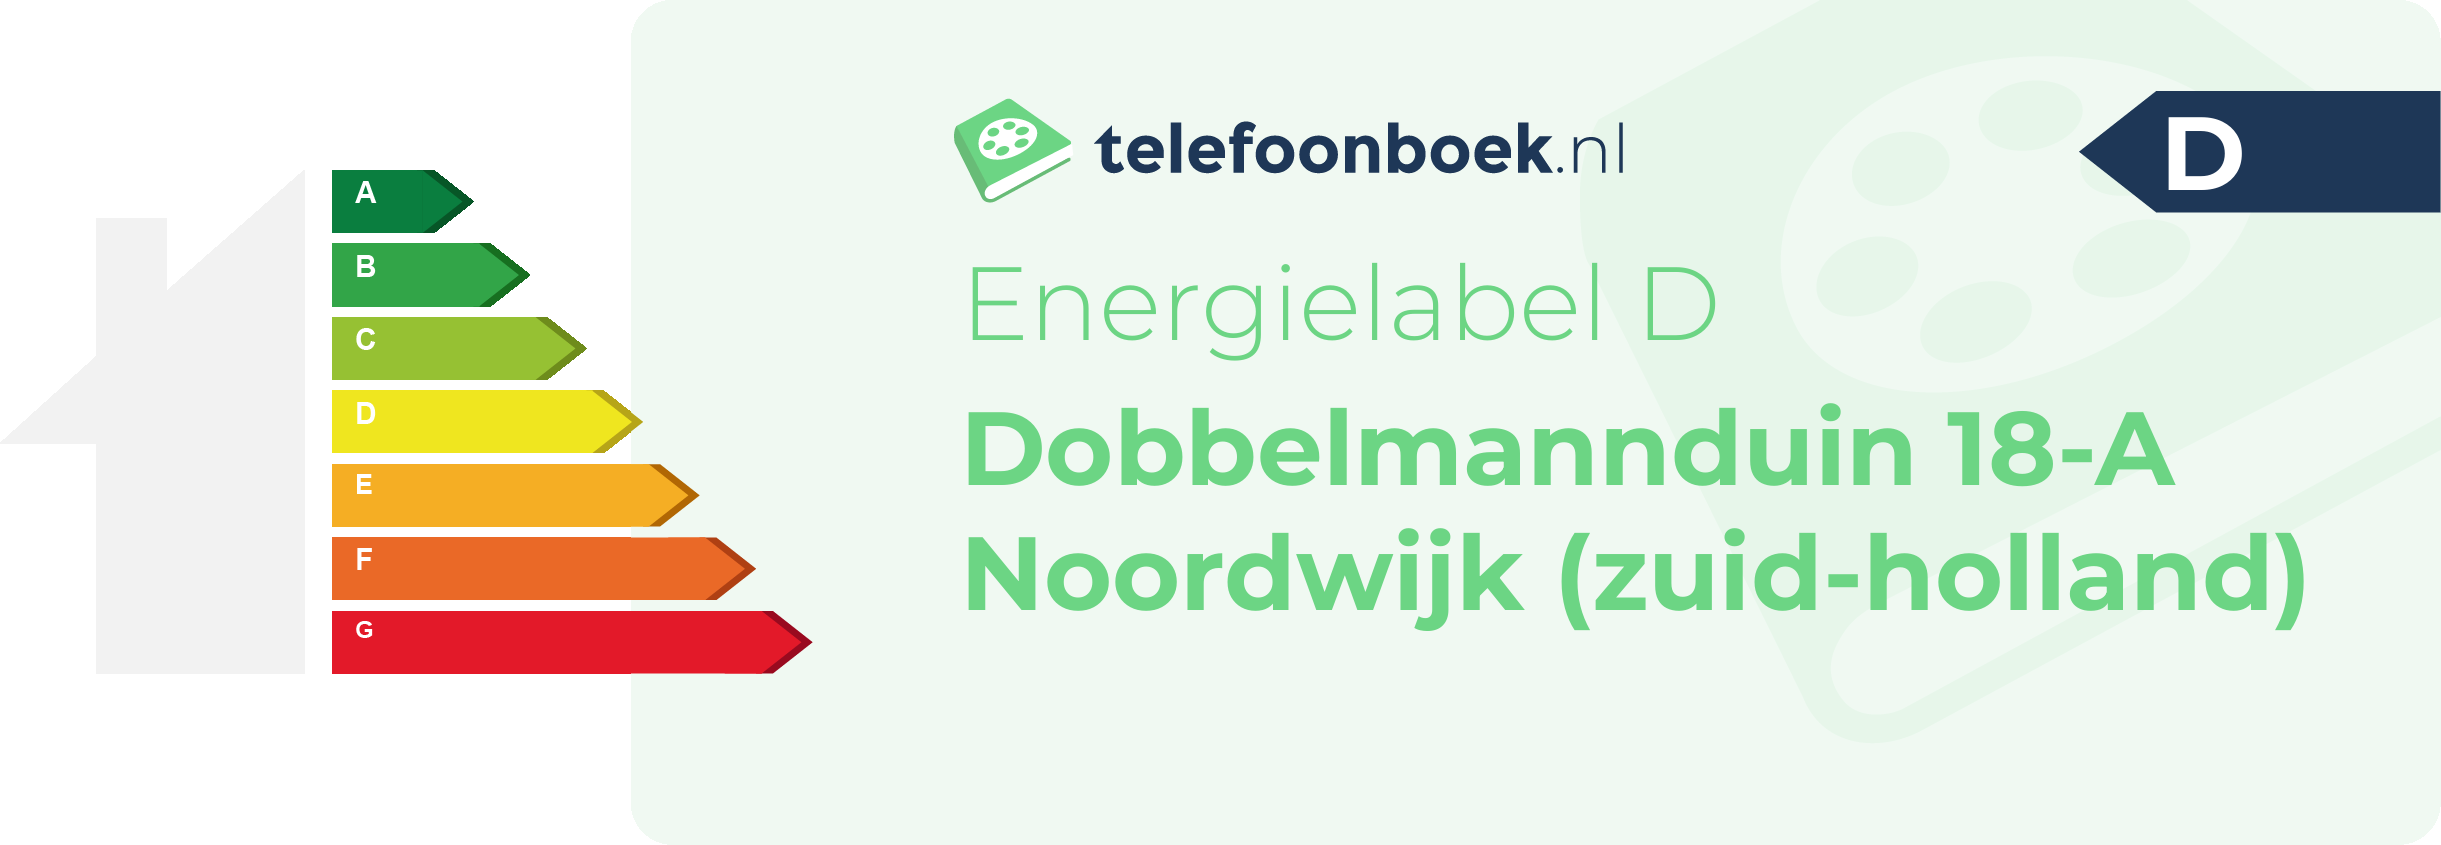 Energielabel Dobbelmannduin 18-A Noordwijk (Zuid-Holland)